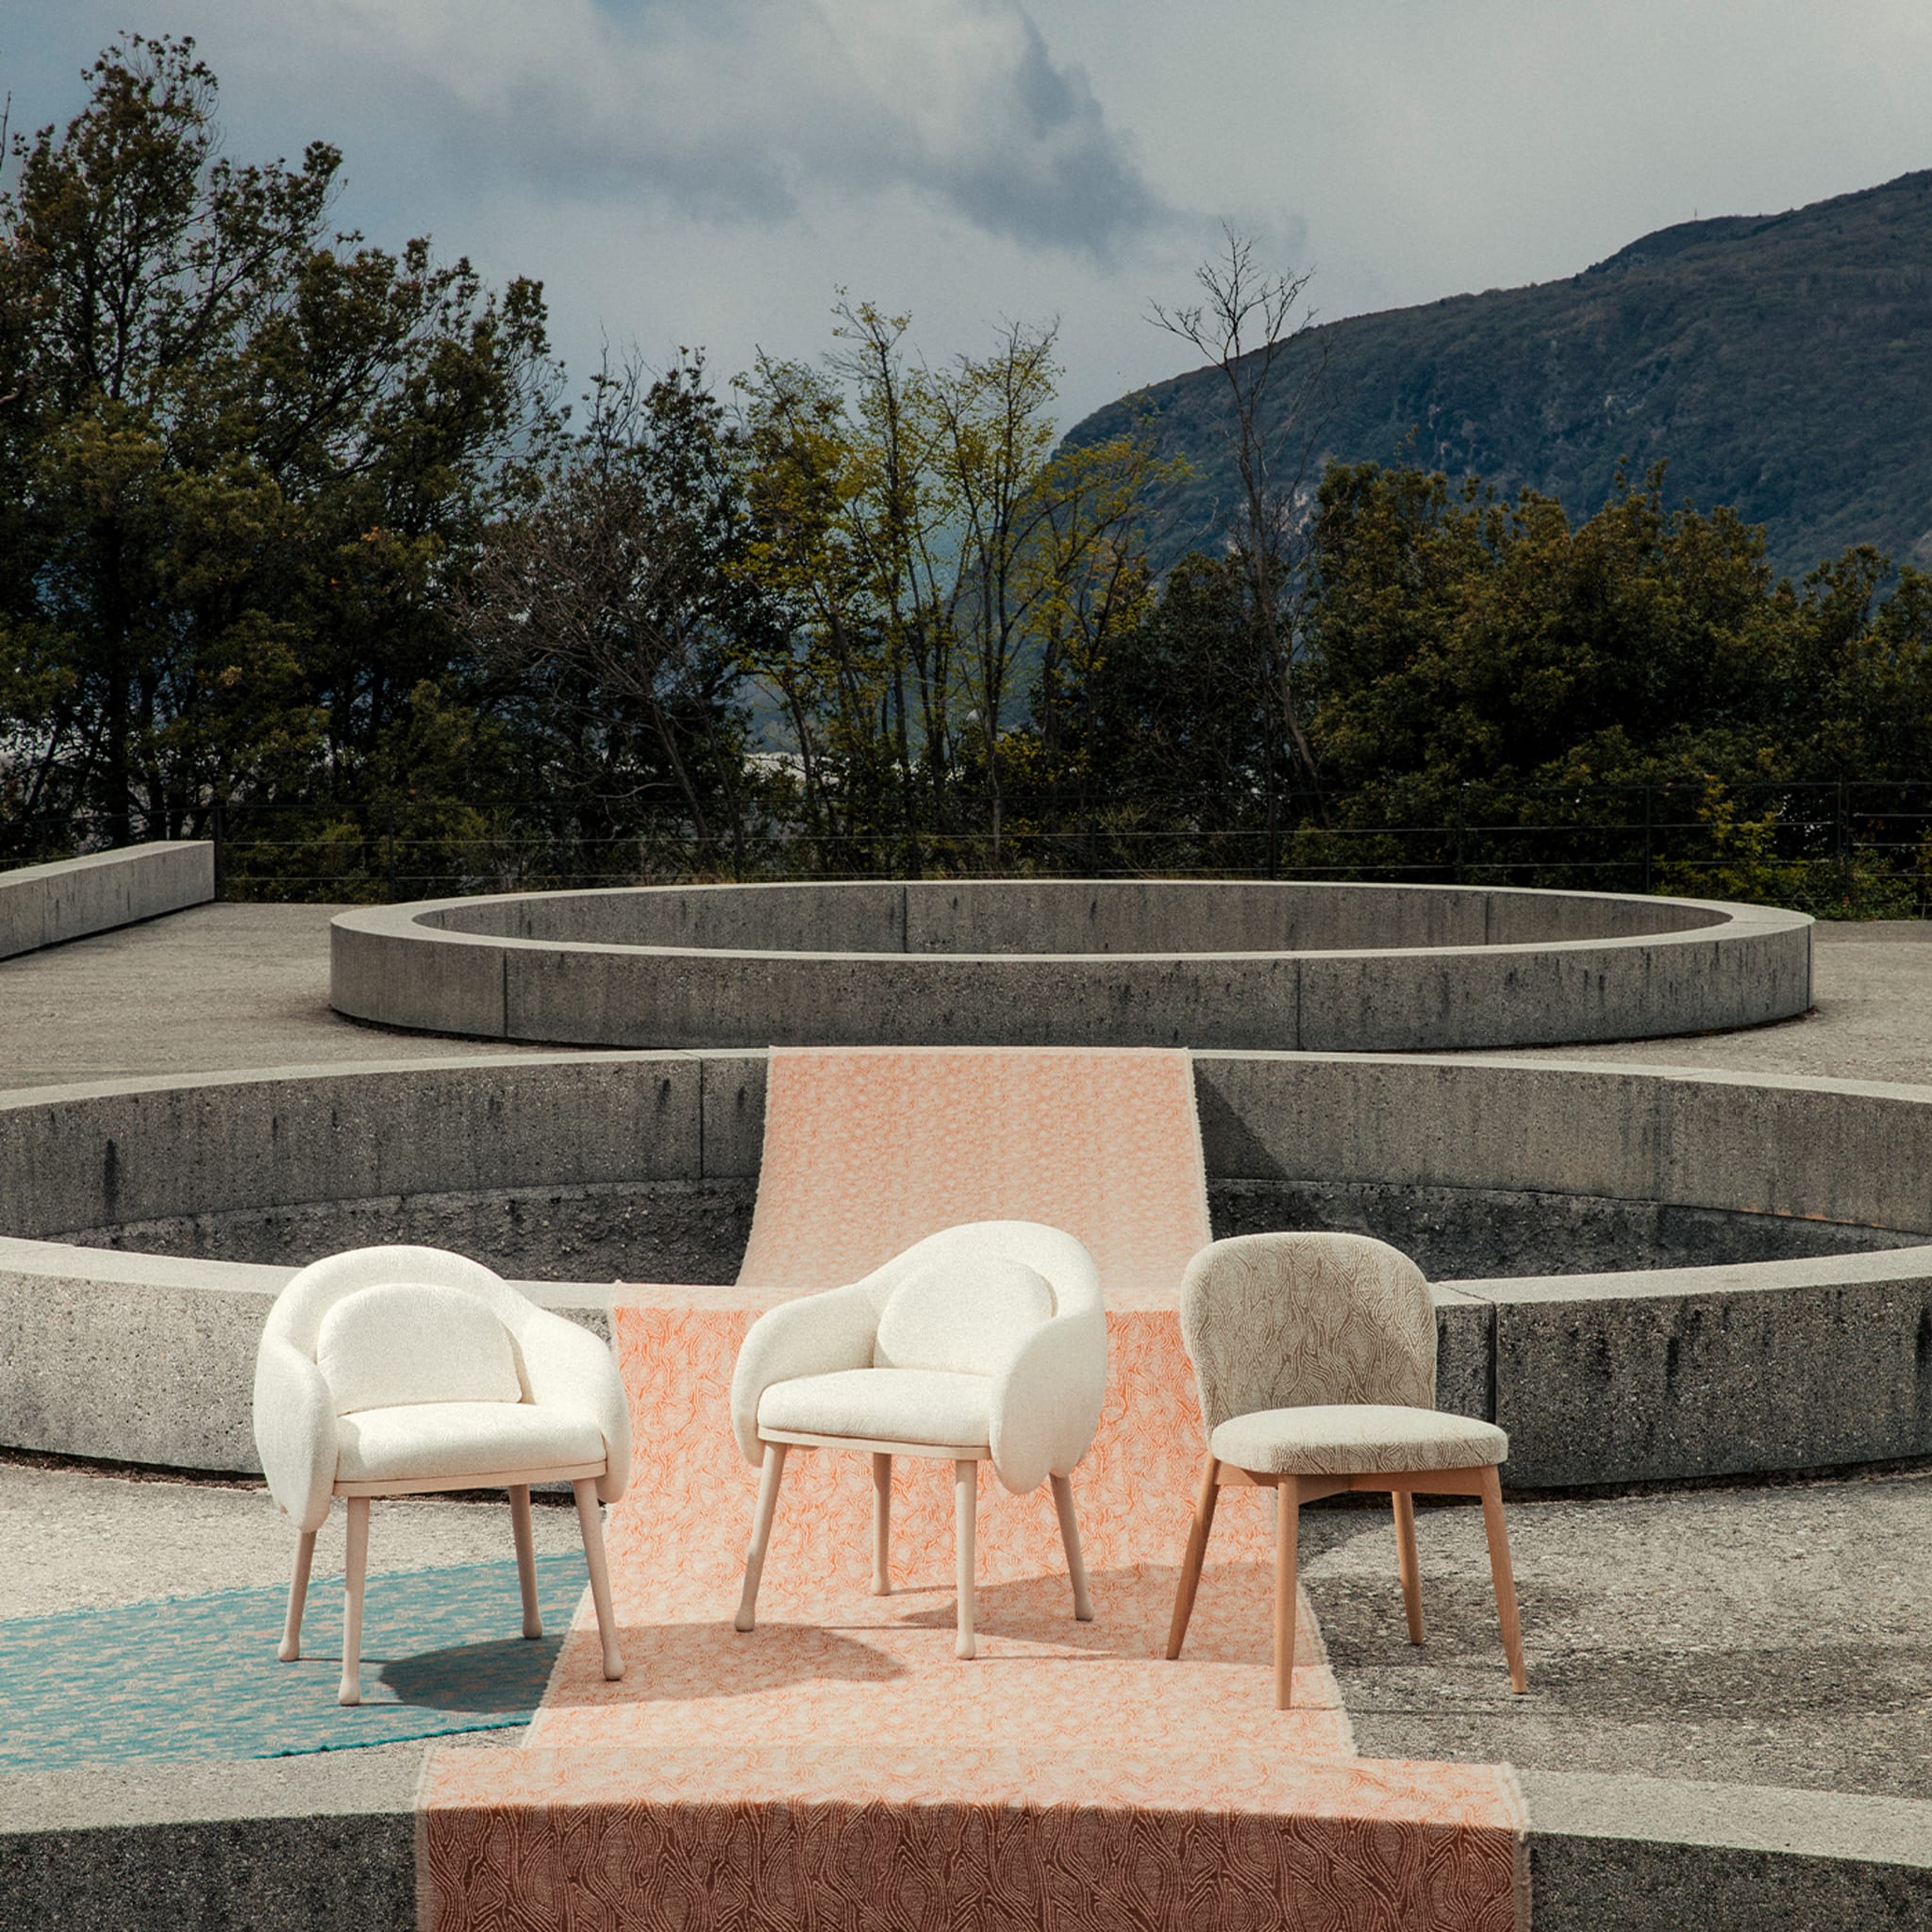 Corolla 270 White Chair by Cristina Celestino - Alternative view 3